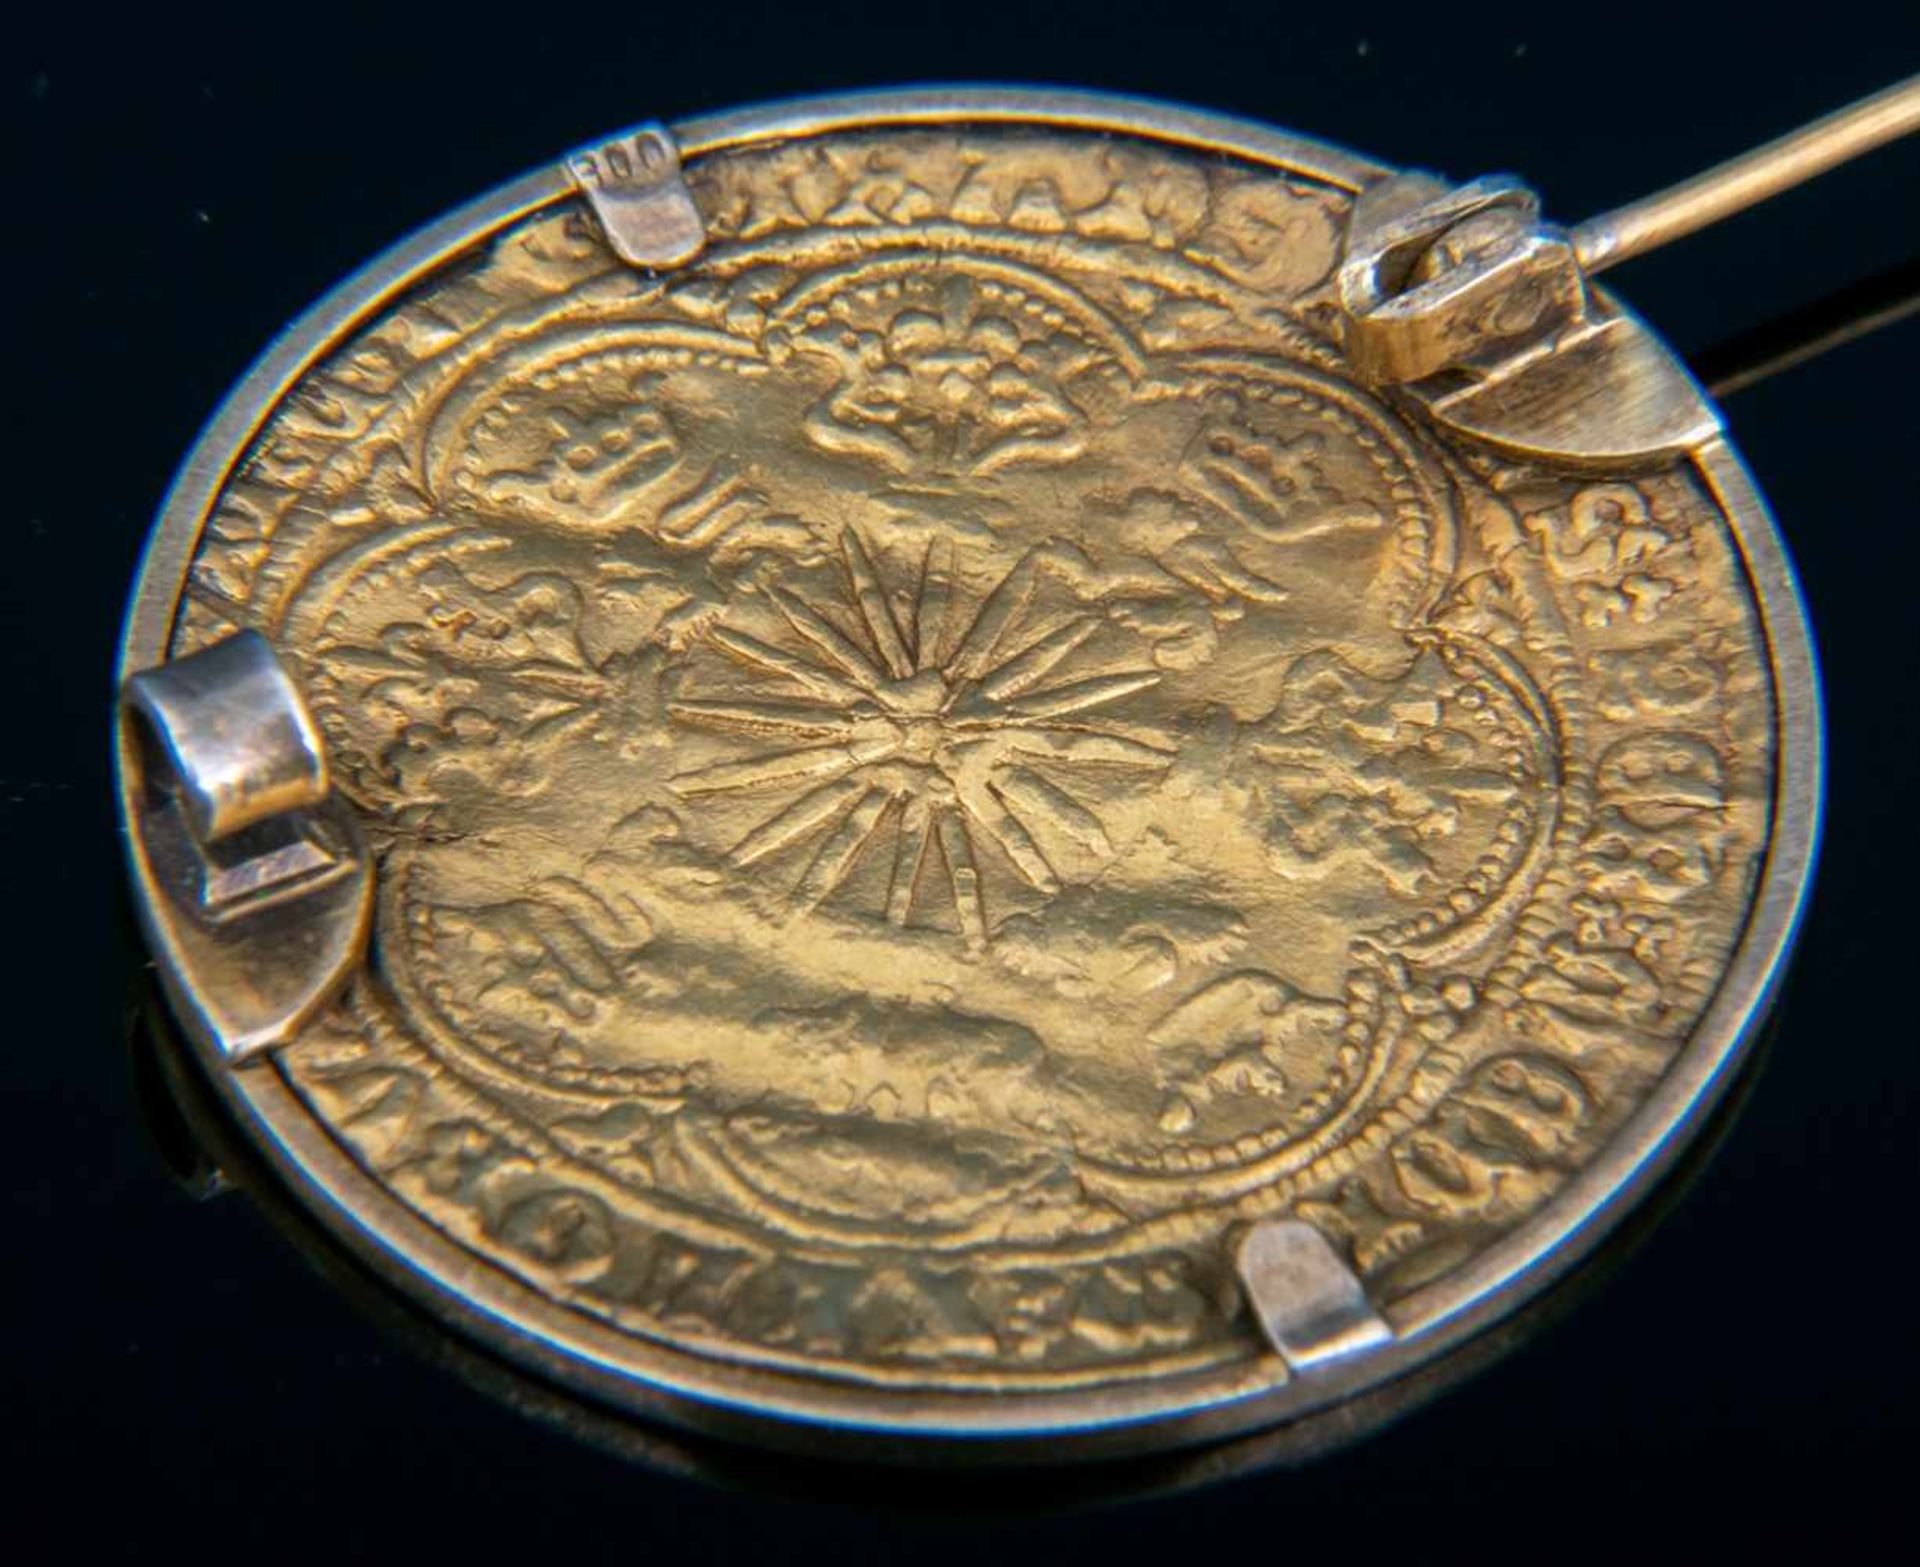 GOLD RYAL / ROSE NOBLE - Goldmünze. England 15. - 17. Jhd., vorderseitig König mit Schwert, Schild & - Bild 15 aus 15